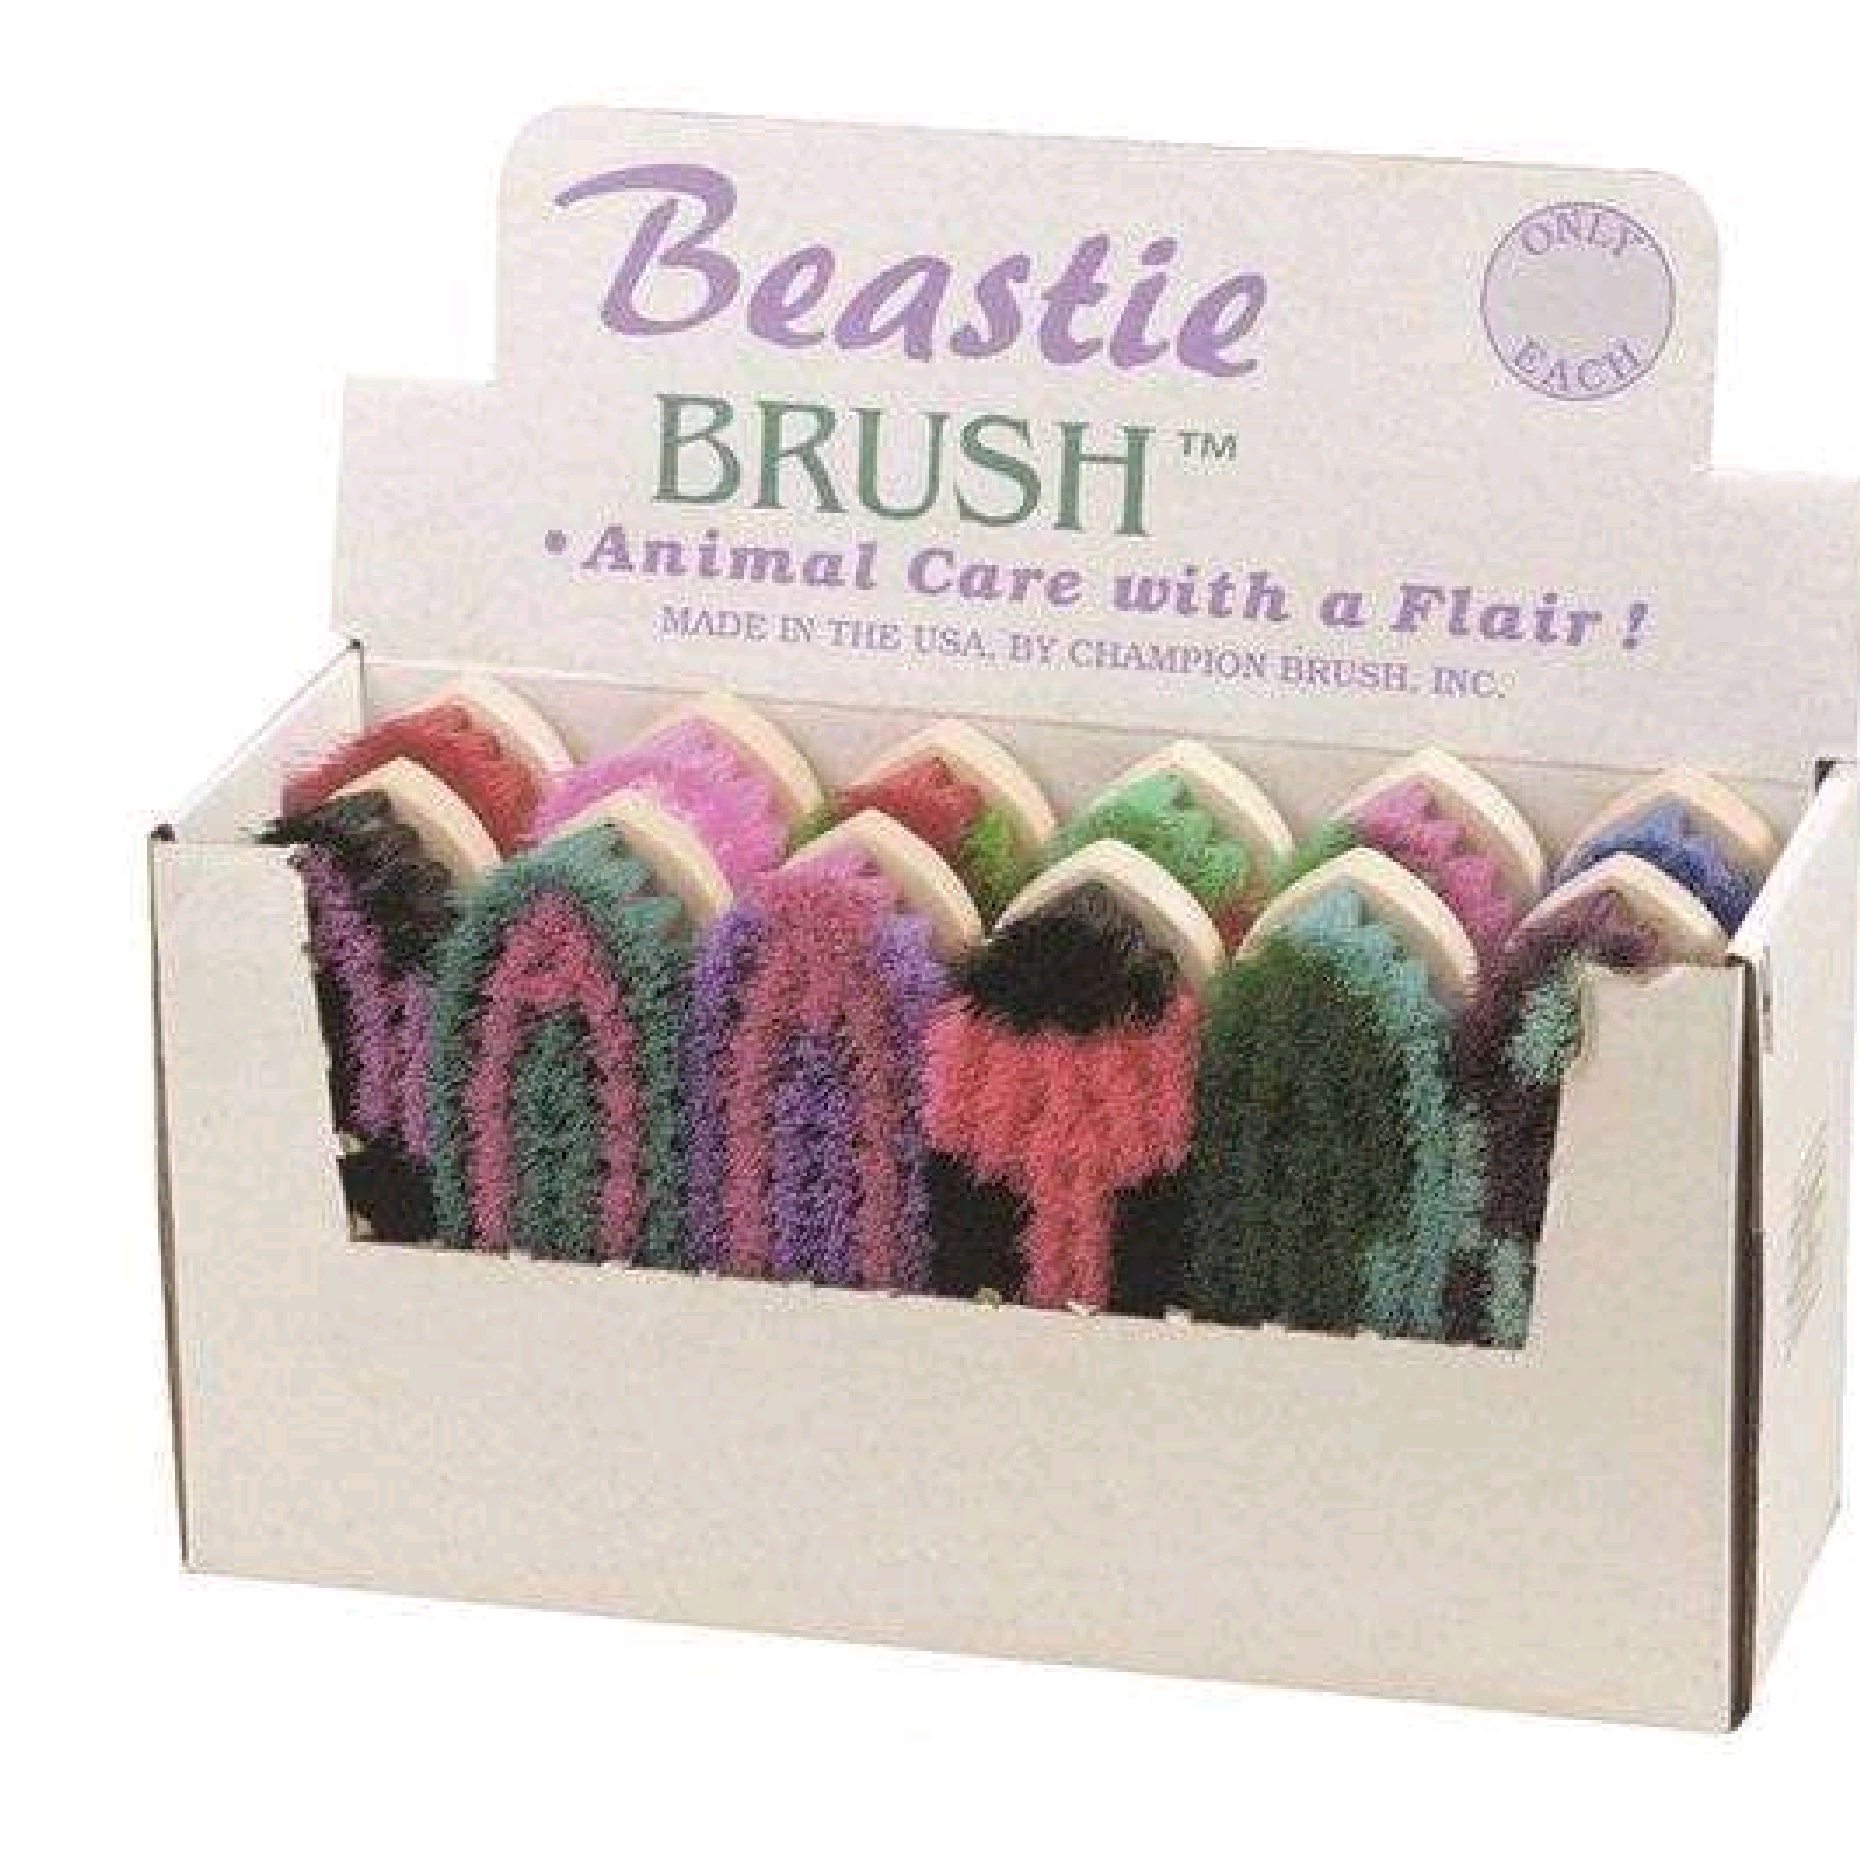 Beastie Brush